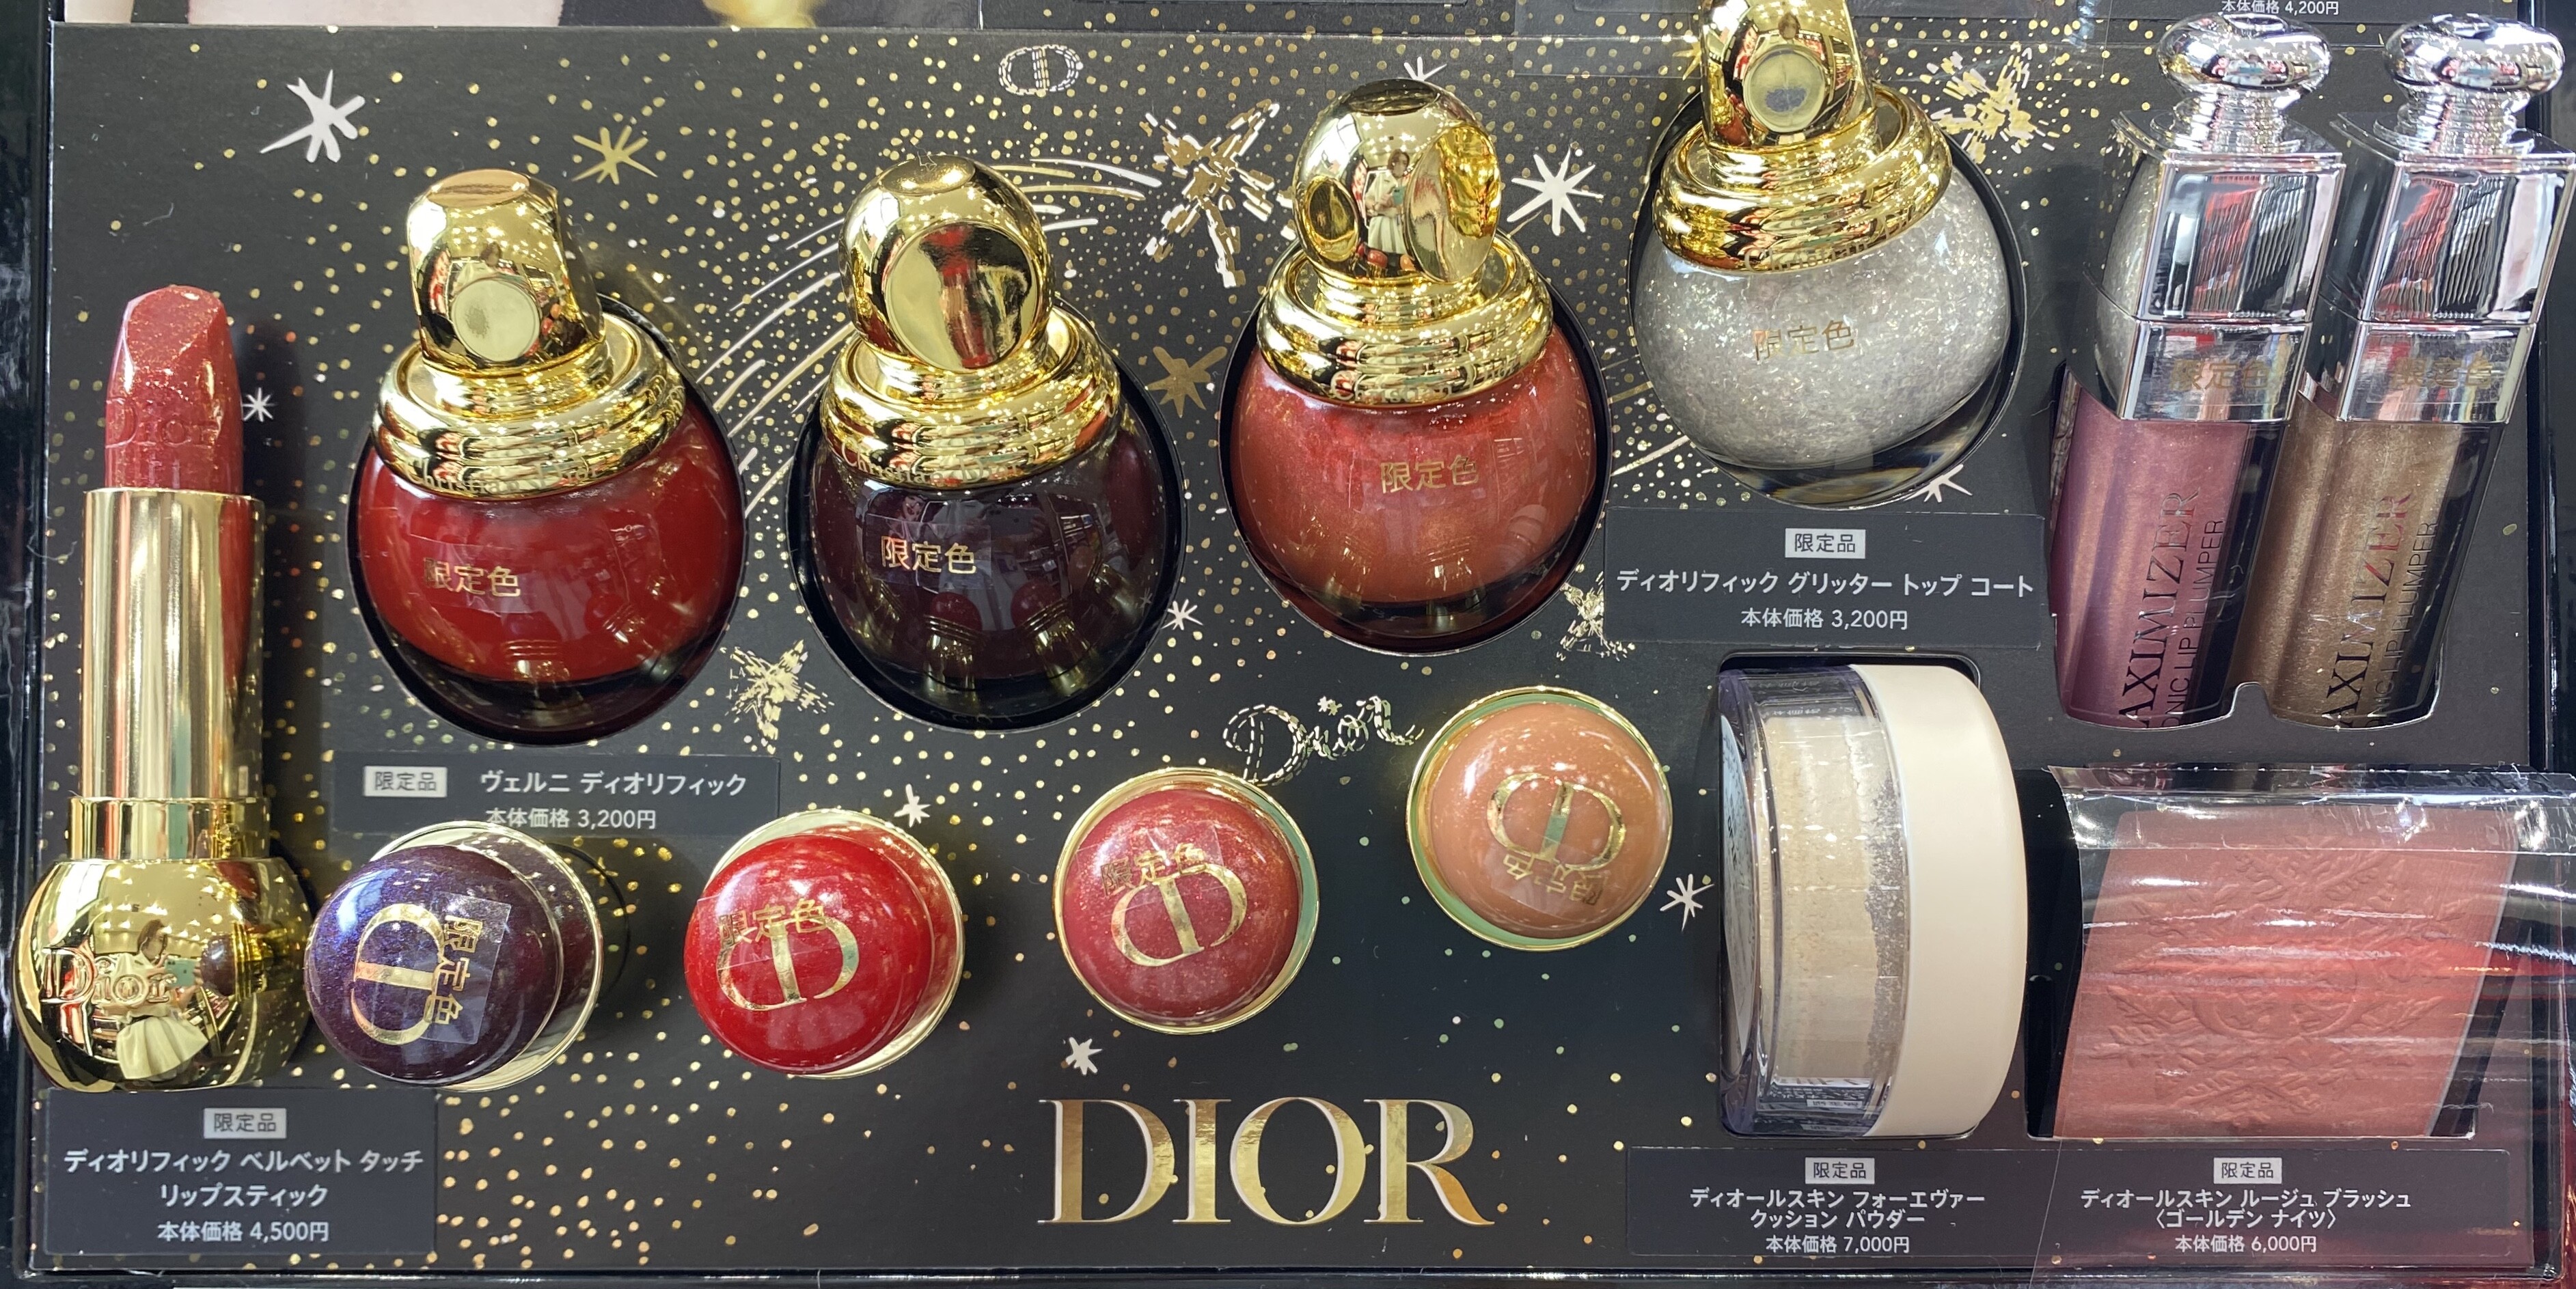 クリスマスコレクション Dior ゴールデンナイツpart2 シンクス ビューティー パレット ショップトピックス グランベリーパーク